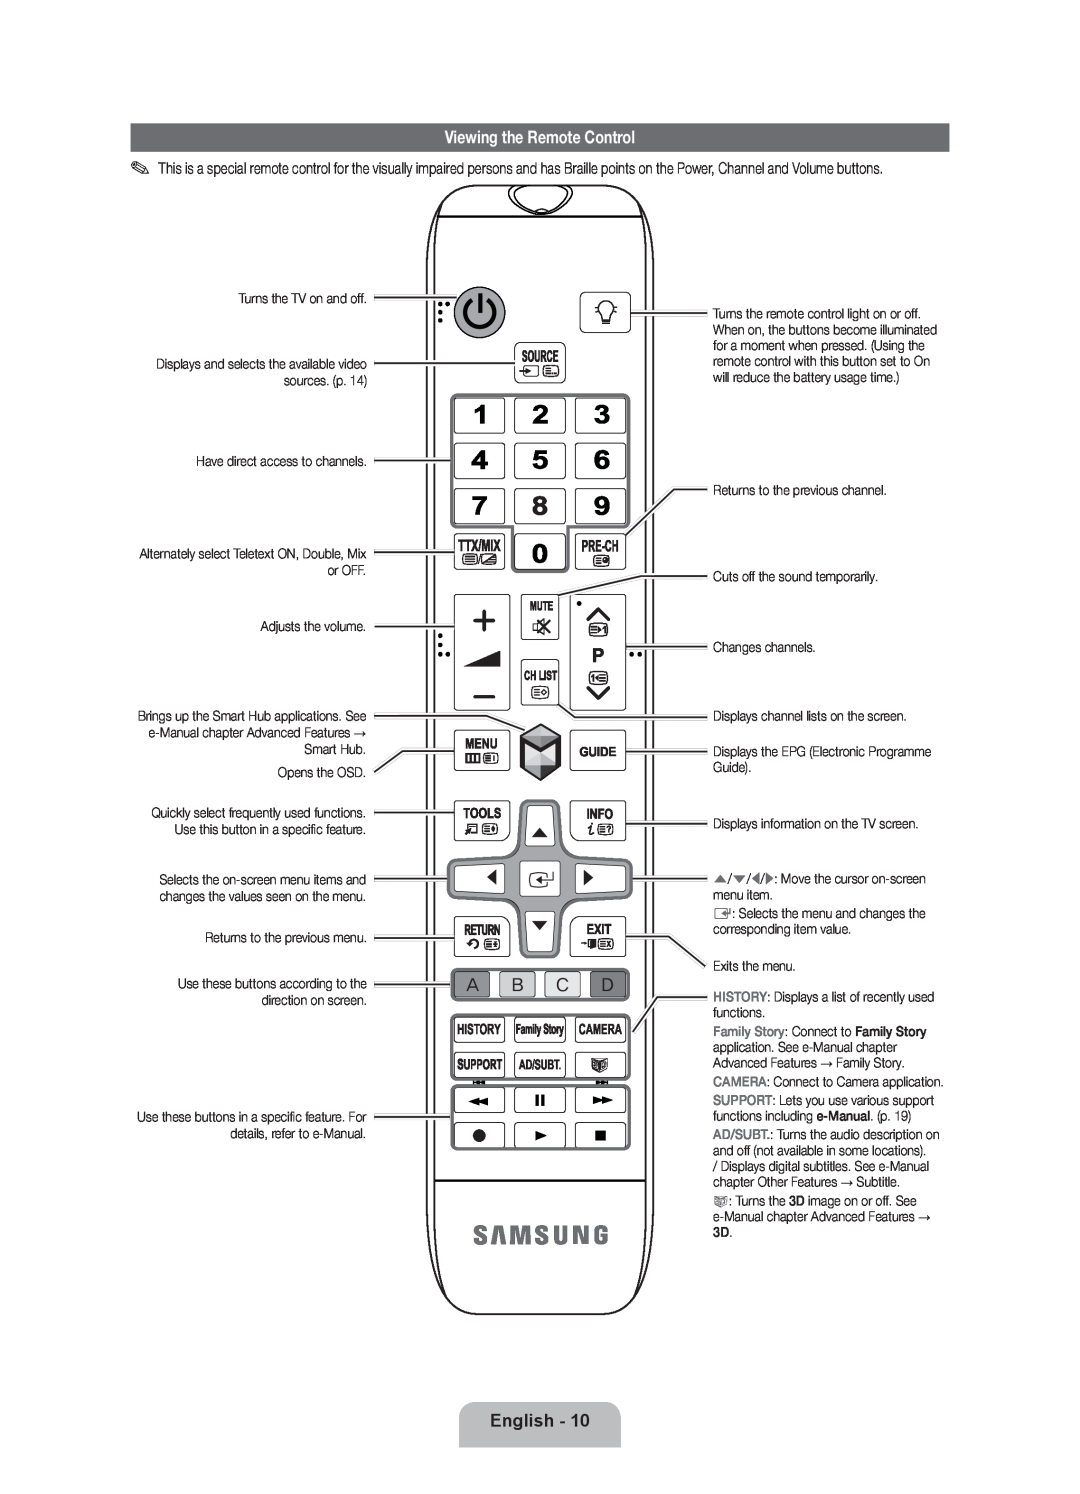 Samsung UE55ES8000SXXH, UE46ES8000SXXN, UE46ES8000SXXH manual Viewing the Remote Control, English, Camera, History, Ad/Subt 